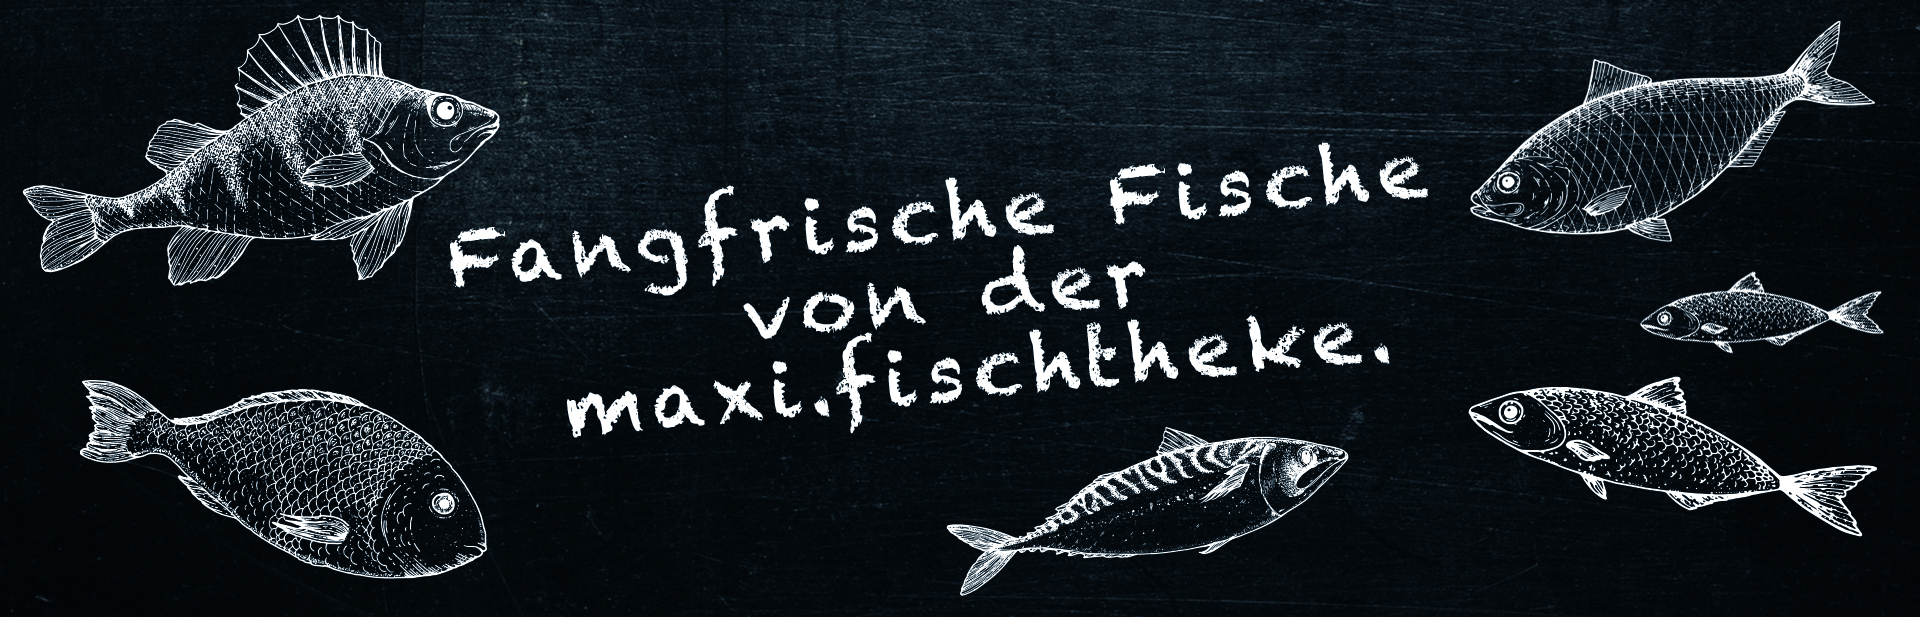 Illustrierte Fische auf einer Schieferplatte mit Aufschrift "Fangfrische Fische von der maxi.fischtheke".